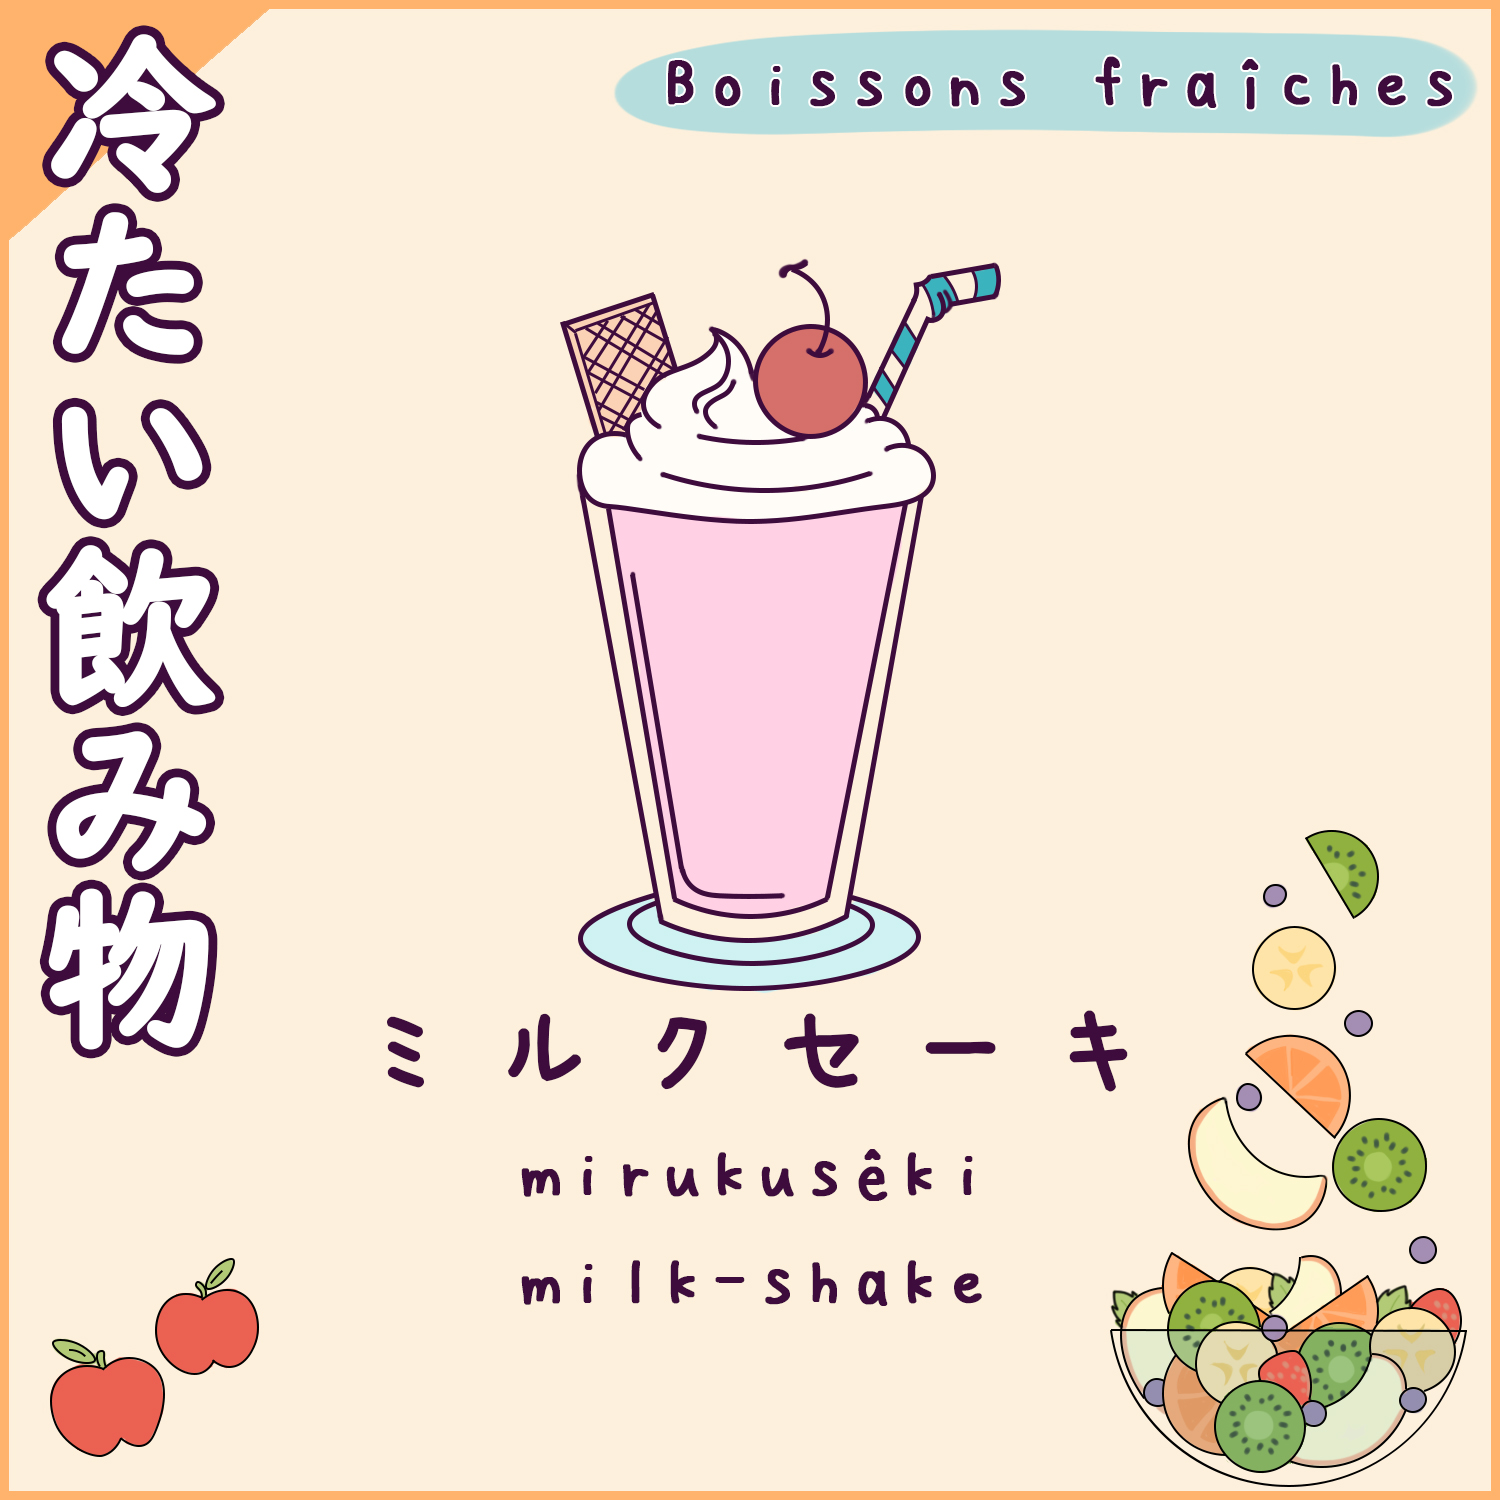 Boissons en japonais (fraîches) - milkshake